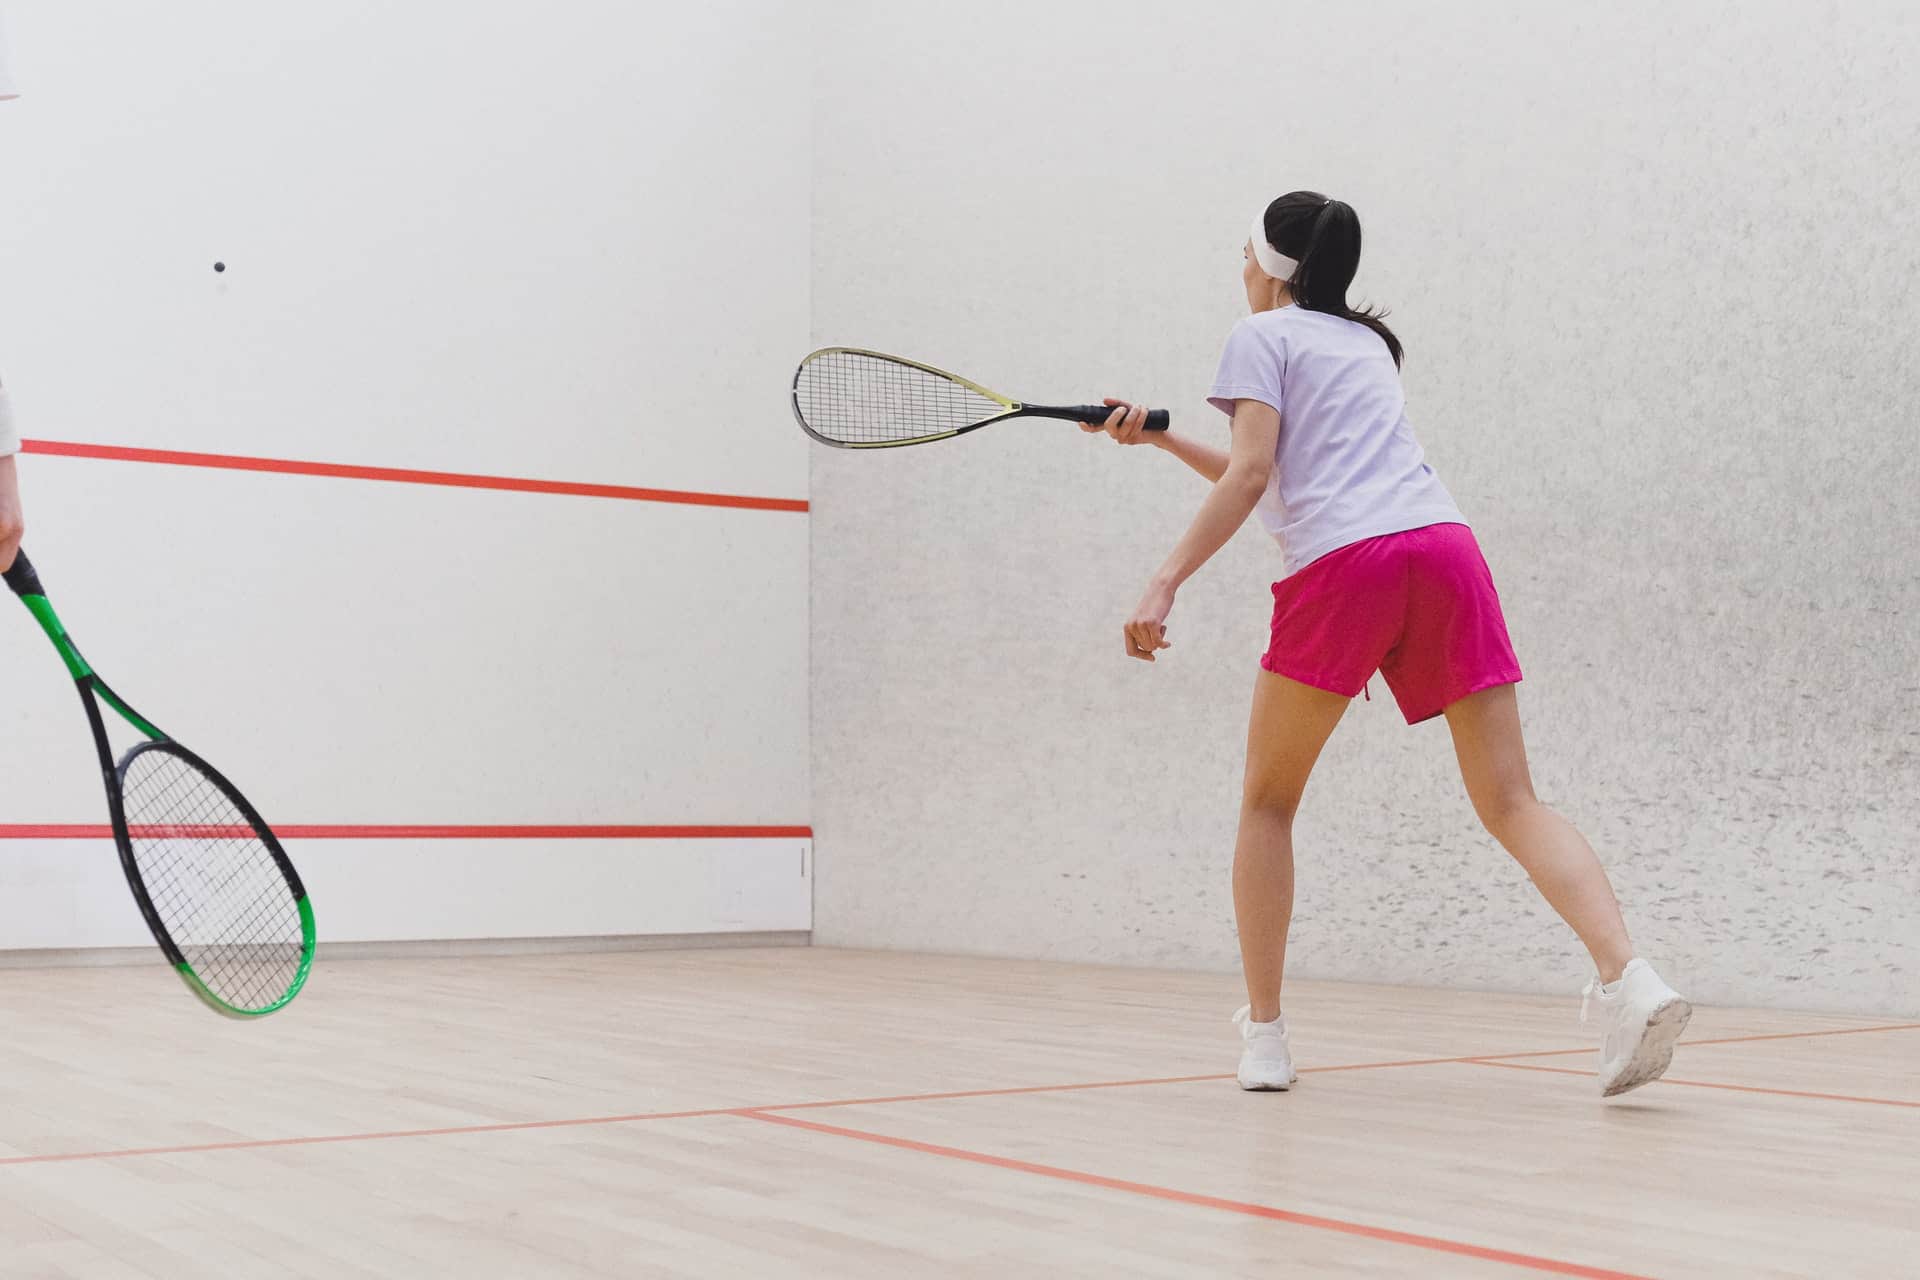 Kontuzje w trakcie gry w squasha – jak im zapobiec?